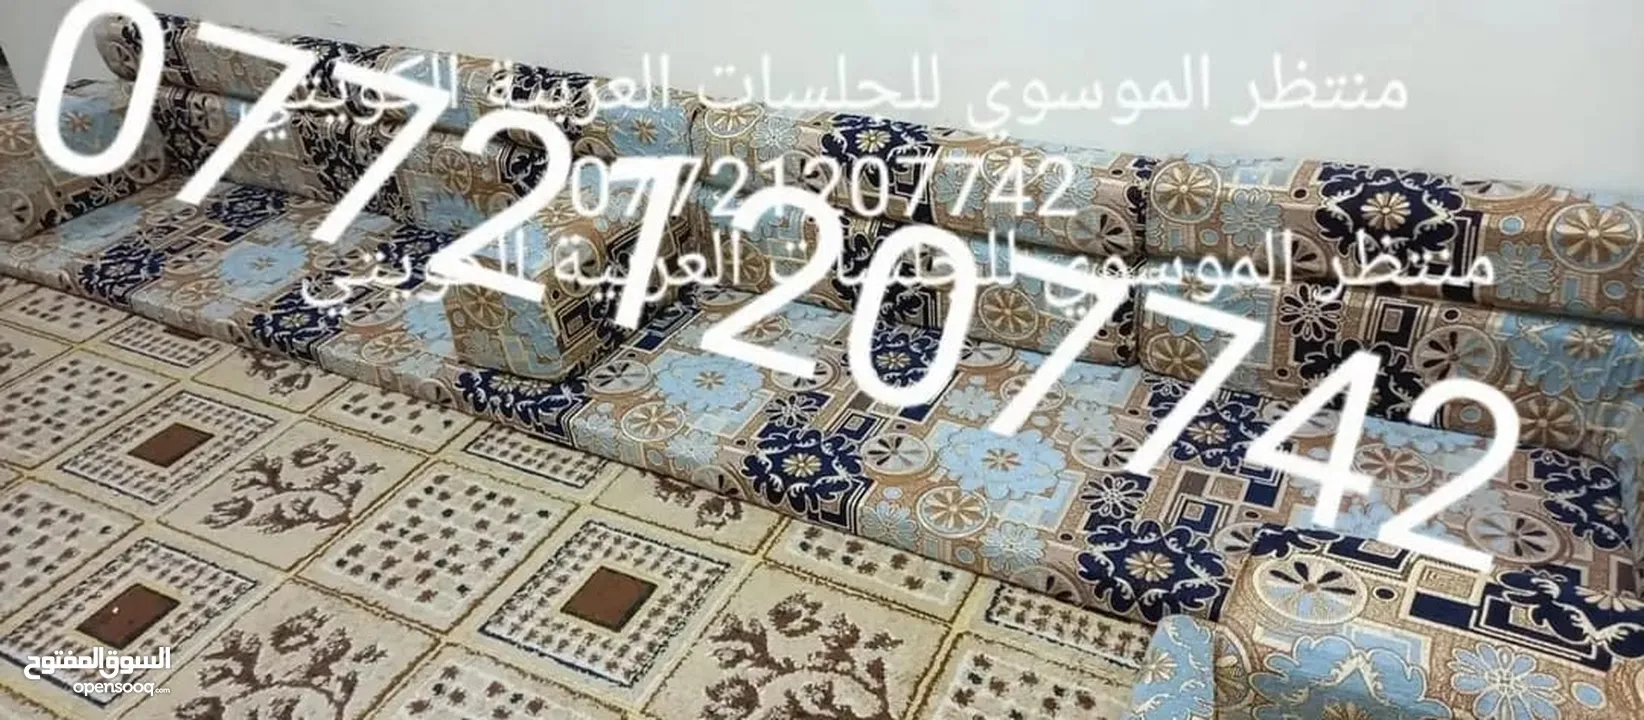 لشهر محرم تم تخفيض السعر الزبائن الكرام ..  .. .. كعدة عربية كويتي جديد ارتفاع ضهر 50سم  7منادر 12